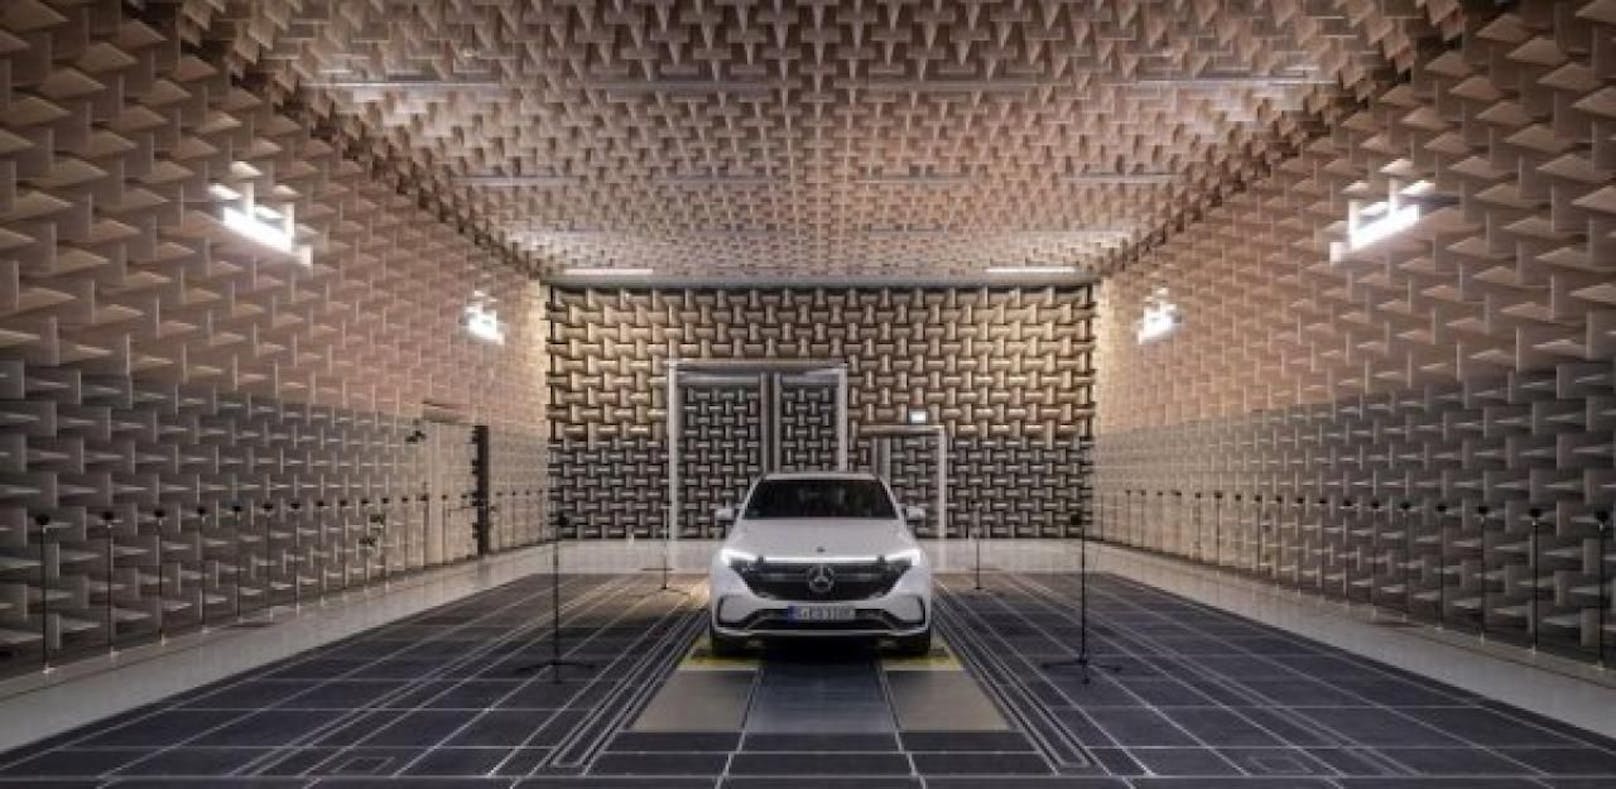 Außengeräuschprüfstand von Mercedes-Benz in Sindelfingen: Hier wird für jedes E-Auto ein individuell abgestimmter E-Sound entwickelt.